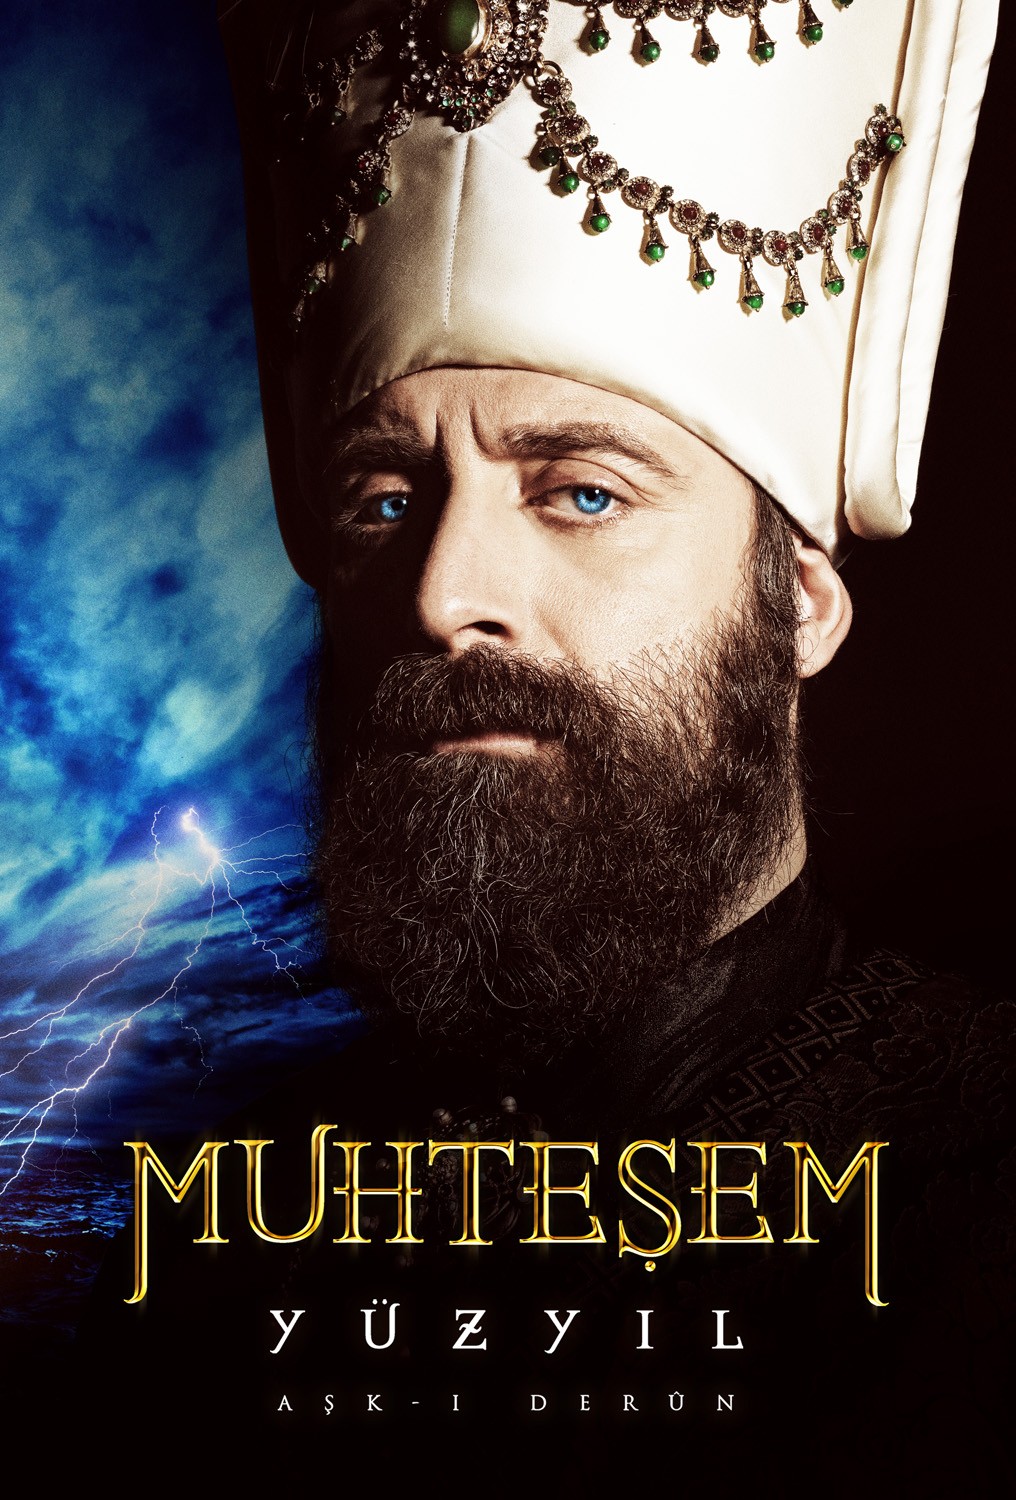 Extra Large TV Poster Image for Muhtesem Yüzyil (#4 of 6)